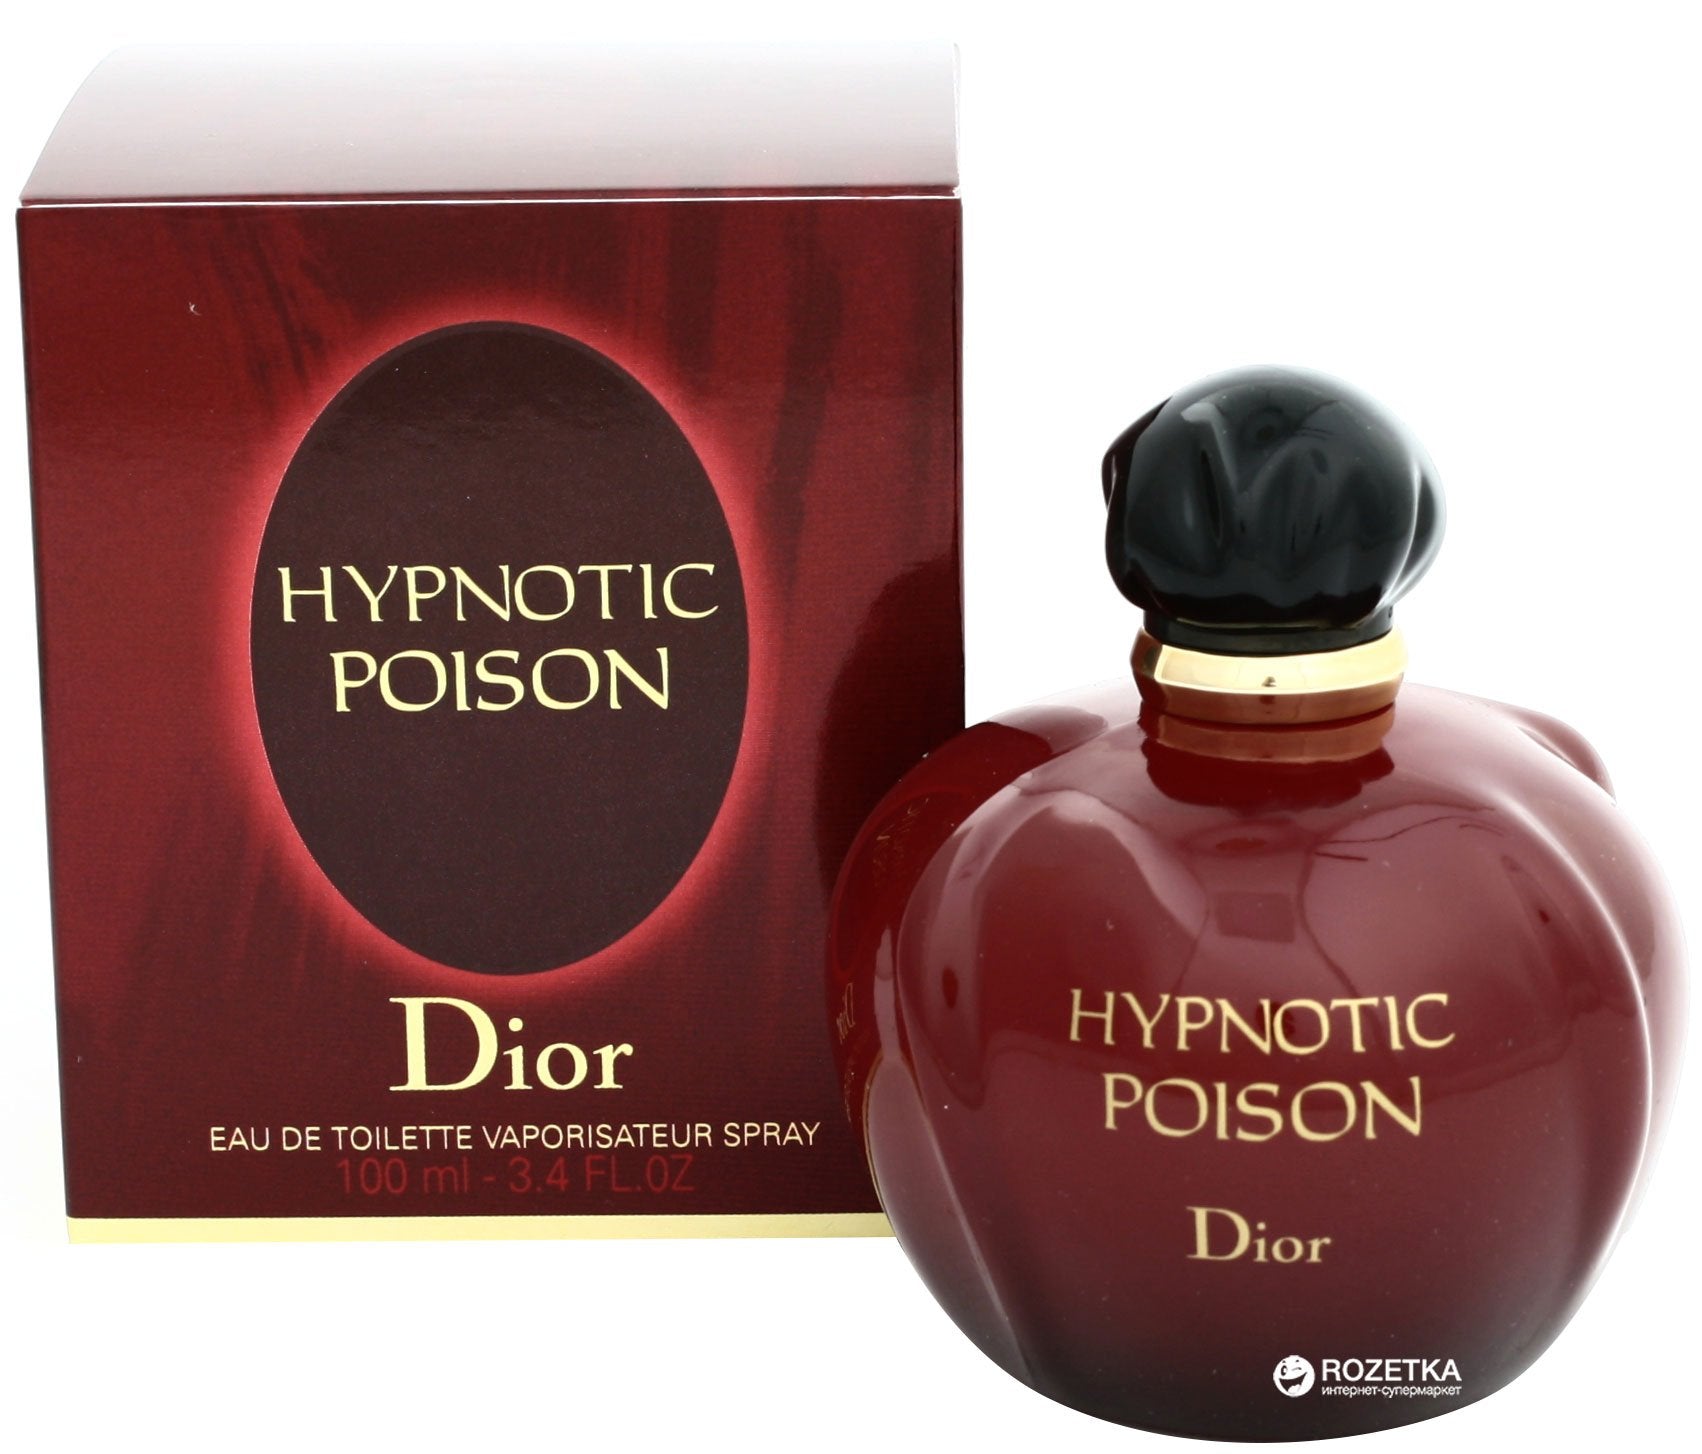 Christian Dior Hypnotic Poison Eau Sensuelle EDT 100ml (CHDH433078100)